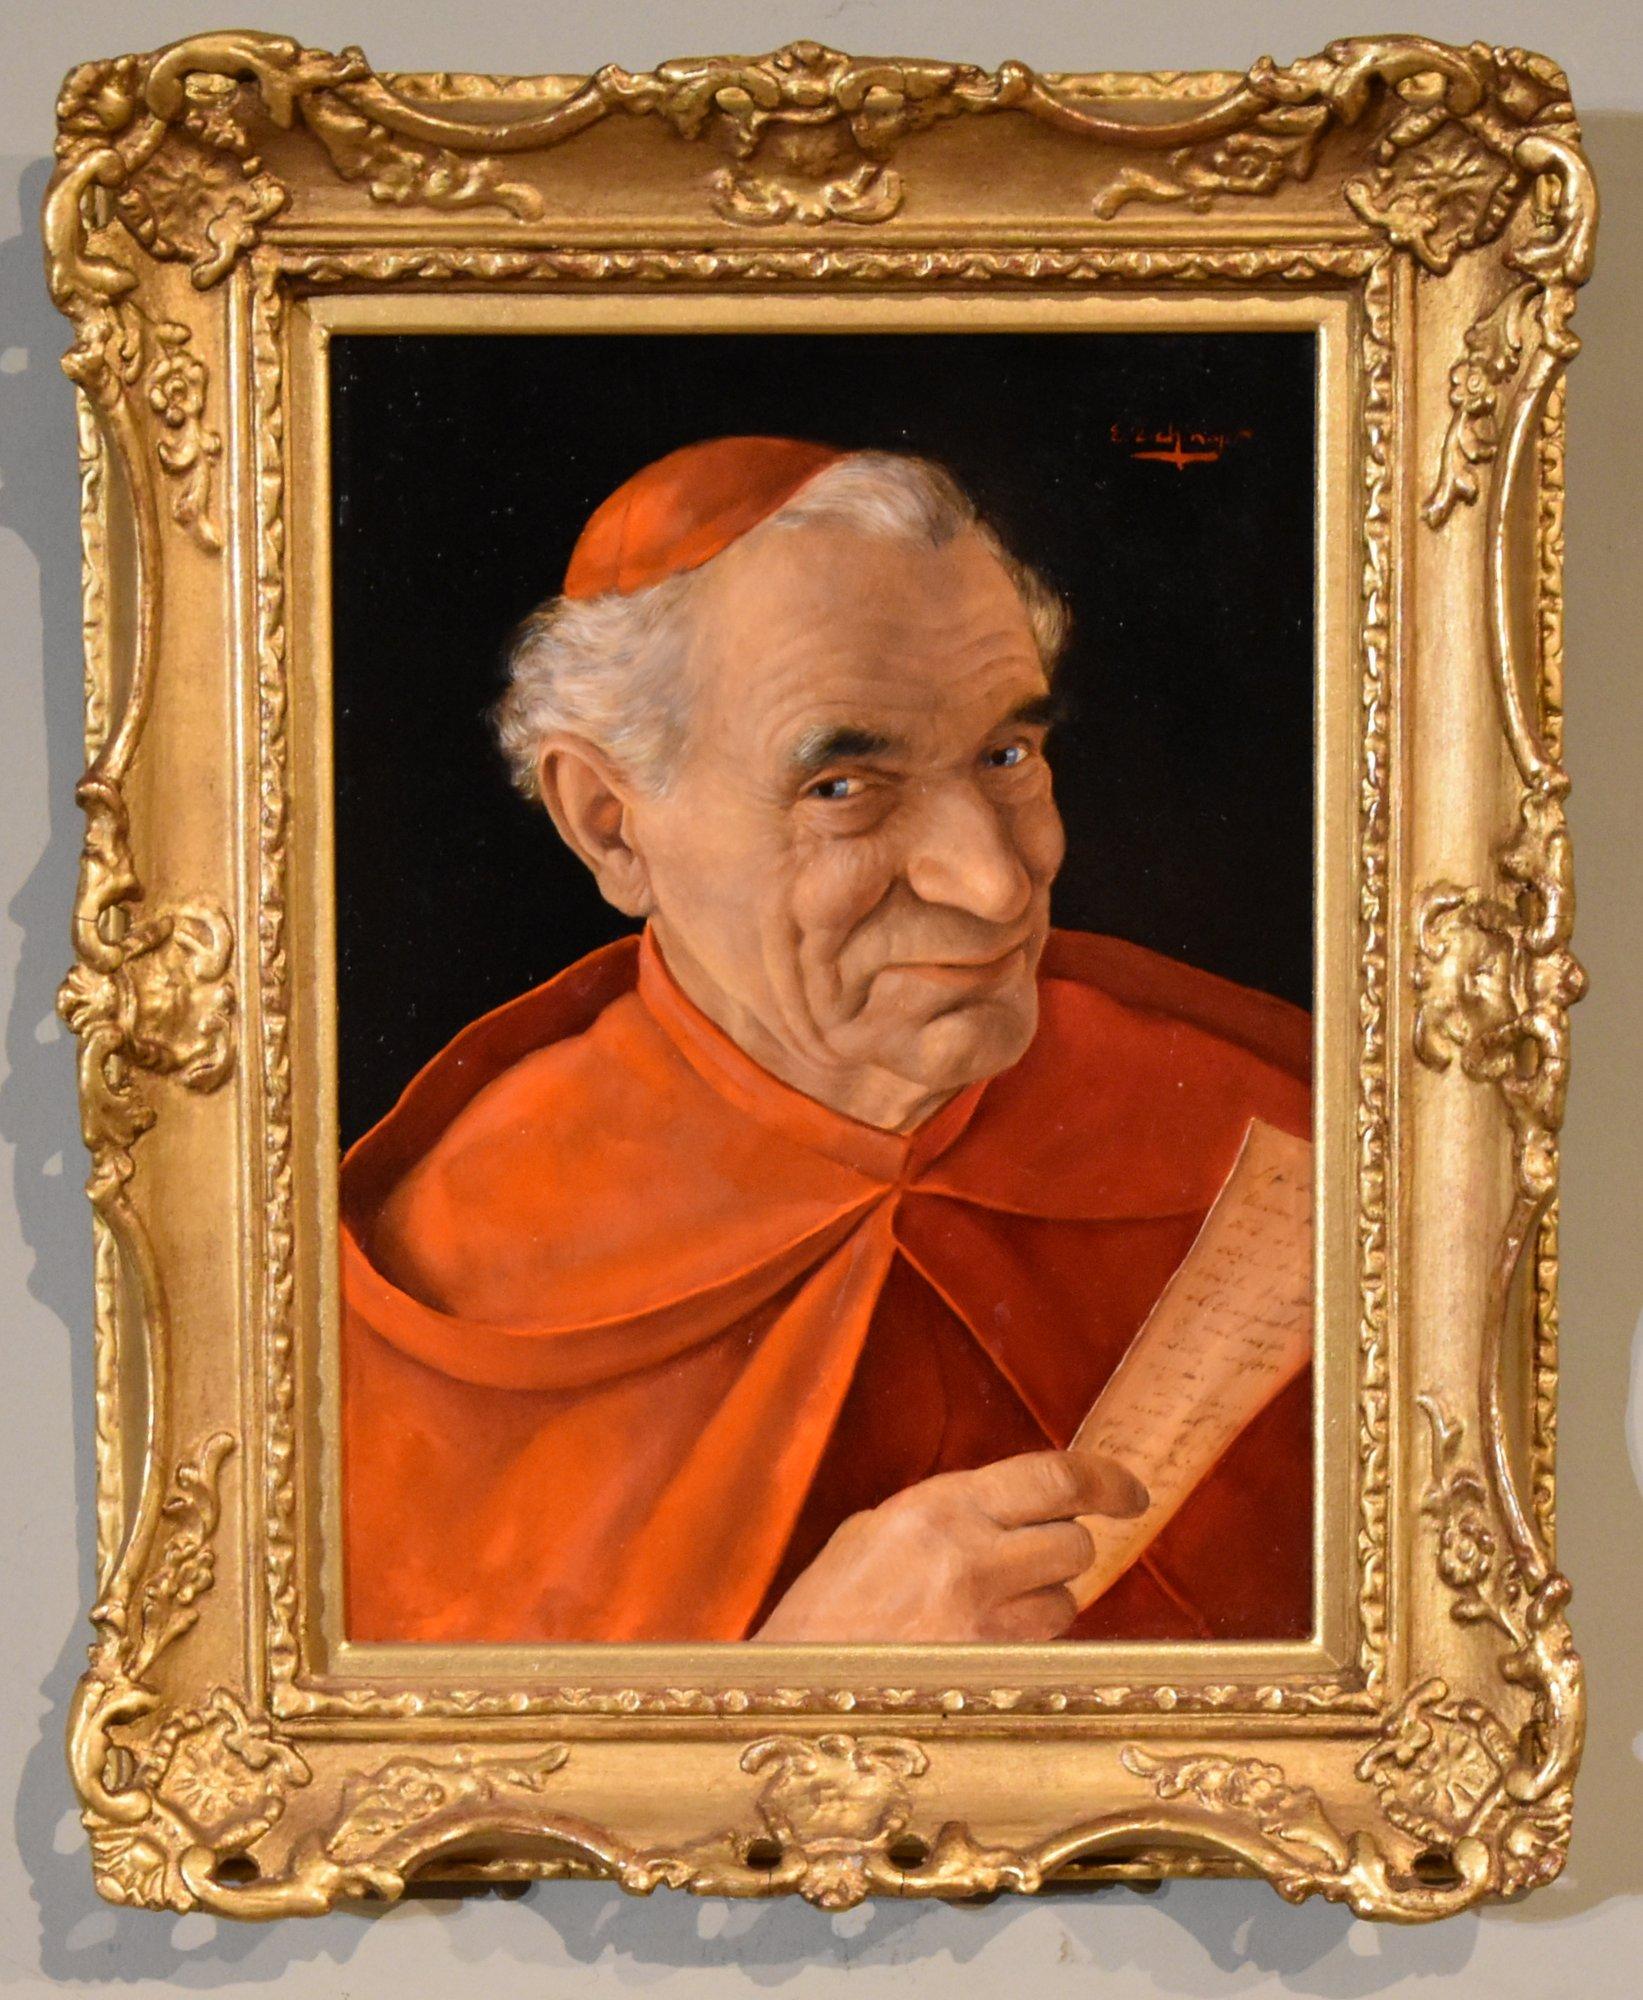 A vendre, cette huile sur panneau d'Erwin Eichinger "Le Cardinal" 1892-1950 Membre de la populaire famille autrichienne d'artistes figuratifs qui a peint des gentilshommes, des cardinaux et des rabbins tyroliens. Le tableau est signé.

Dimensions